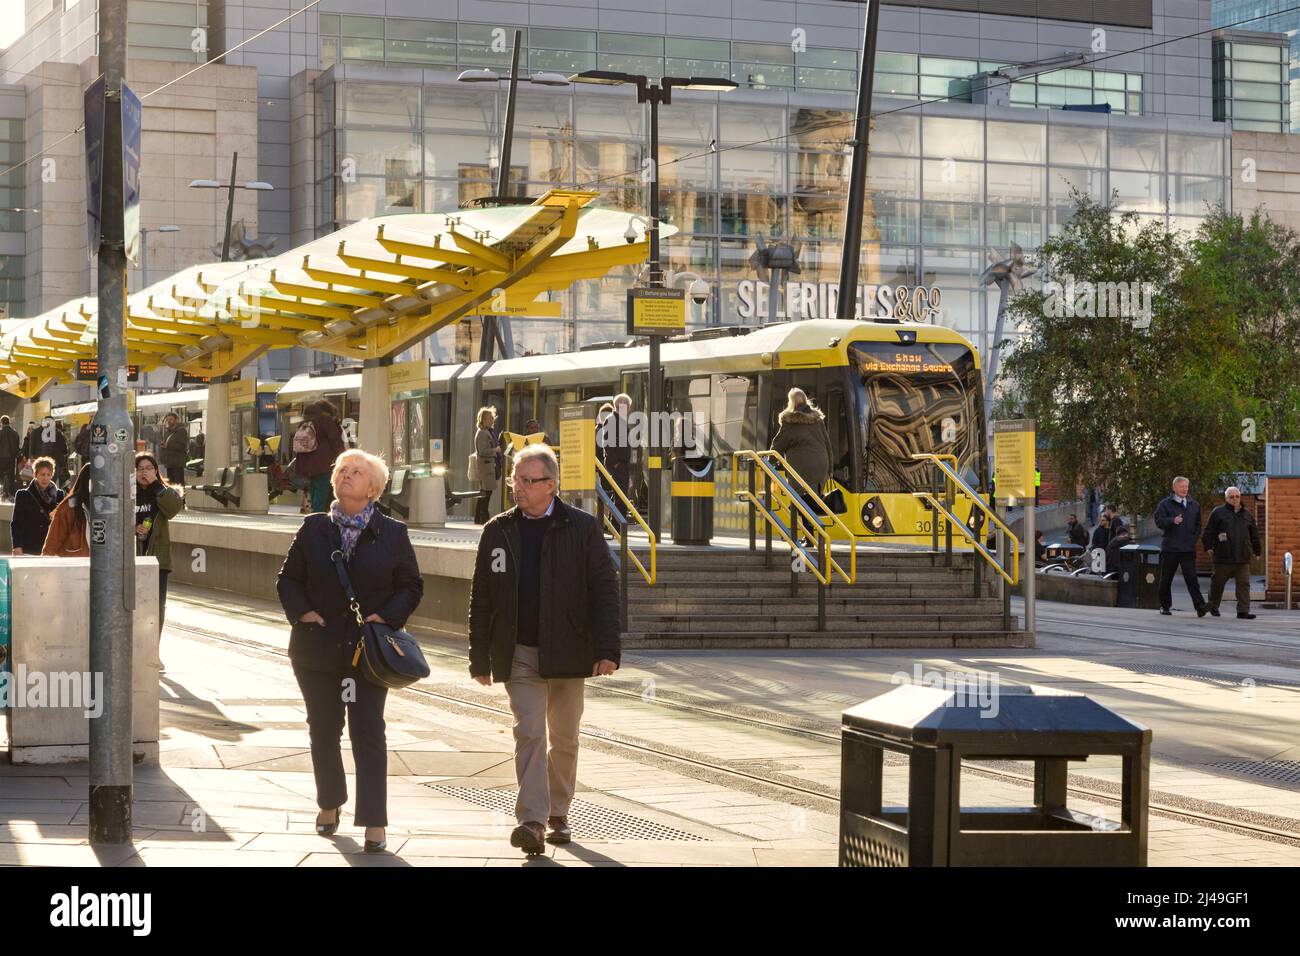 2 novembre 2018 : Manchester, Royaume-Uni - Arrêt de tramway Metrolink à Exchange Square, couple senior à pied, soleil d'hiver. Banque D'Images